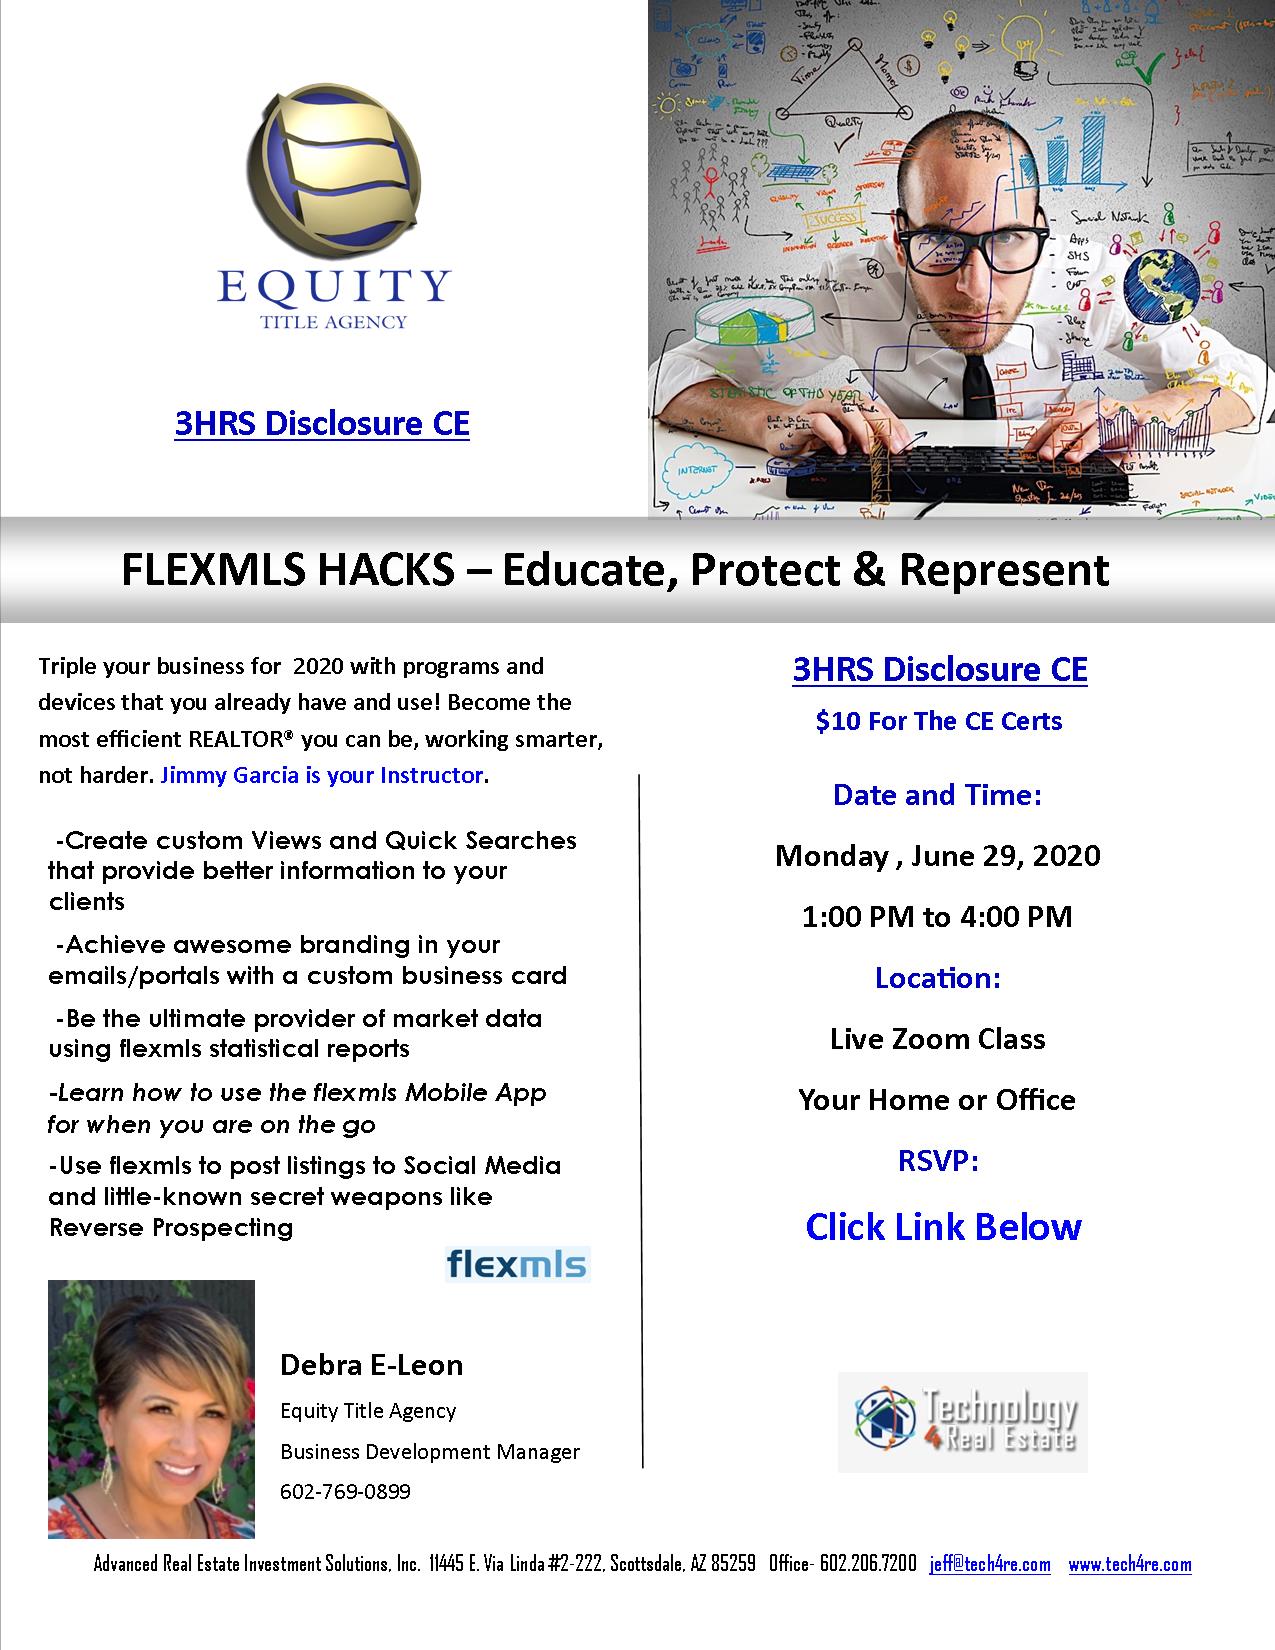 FlexMLS Hacks – Educate, Represent and Protect